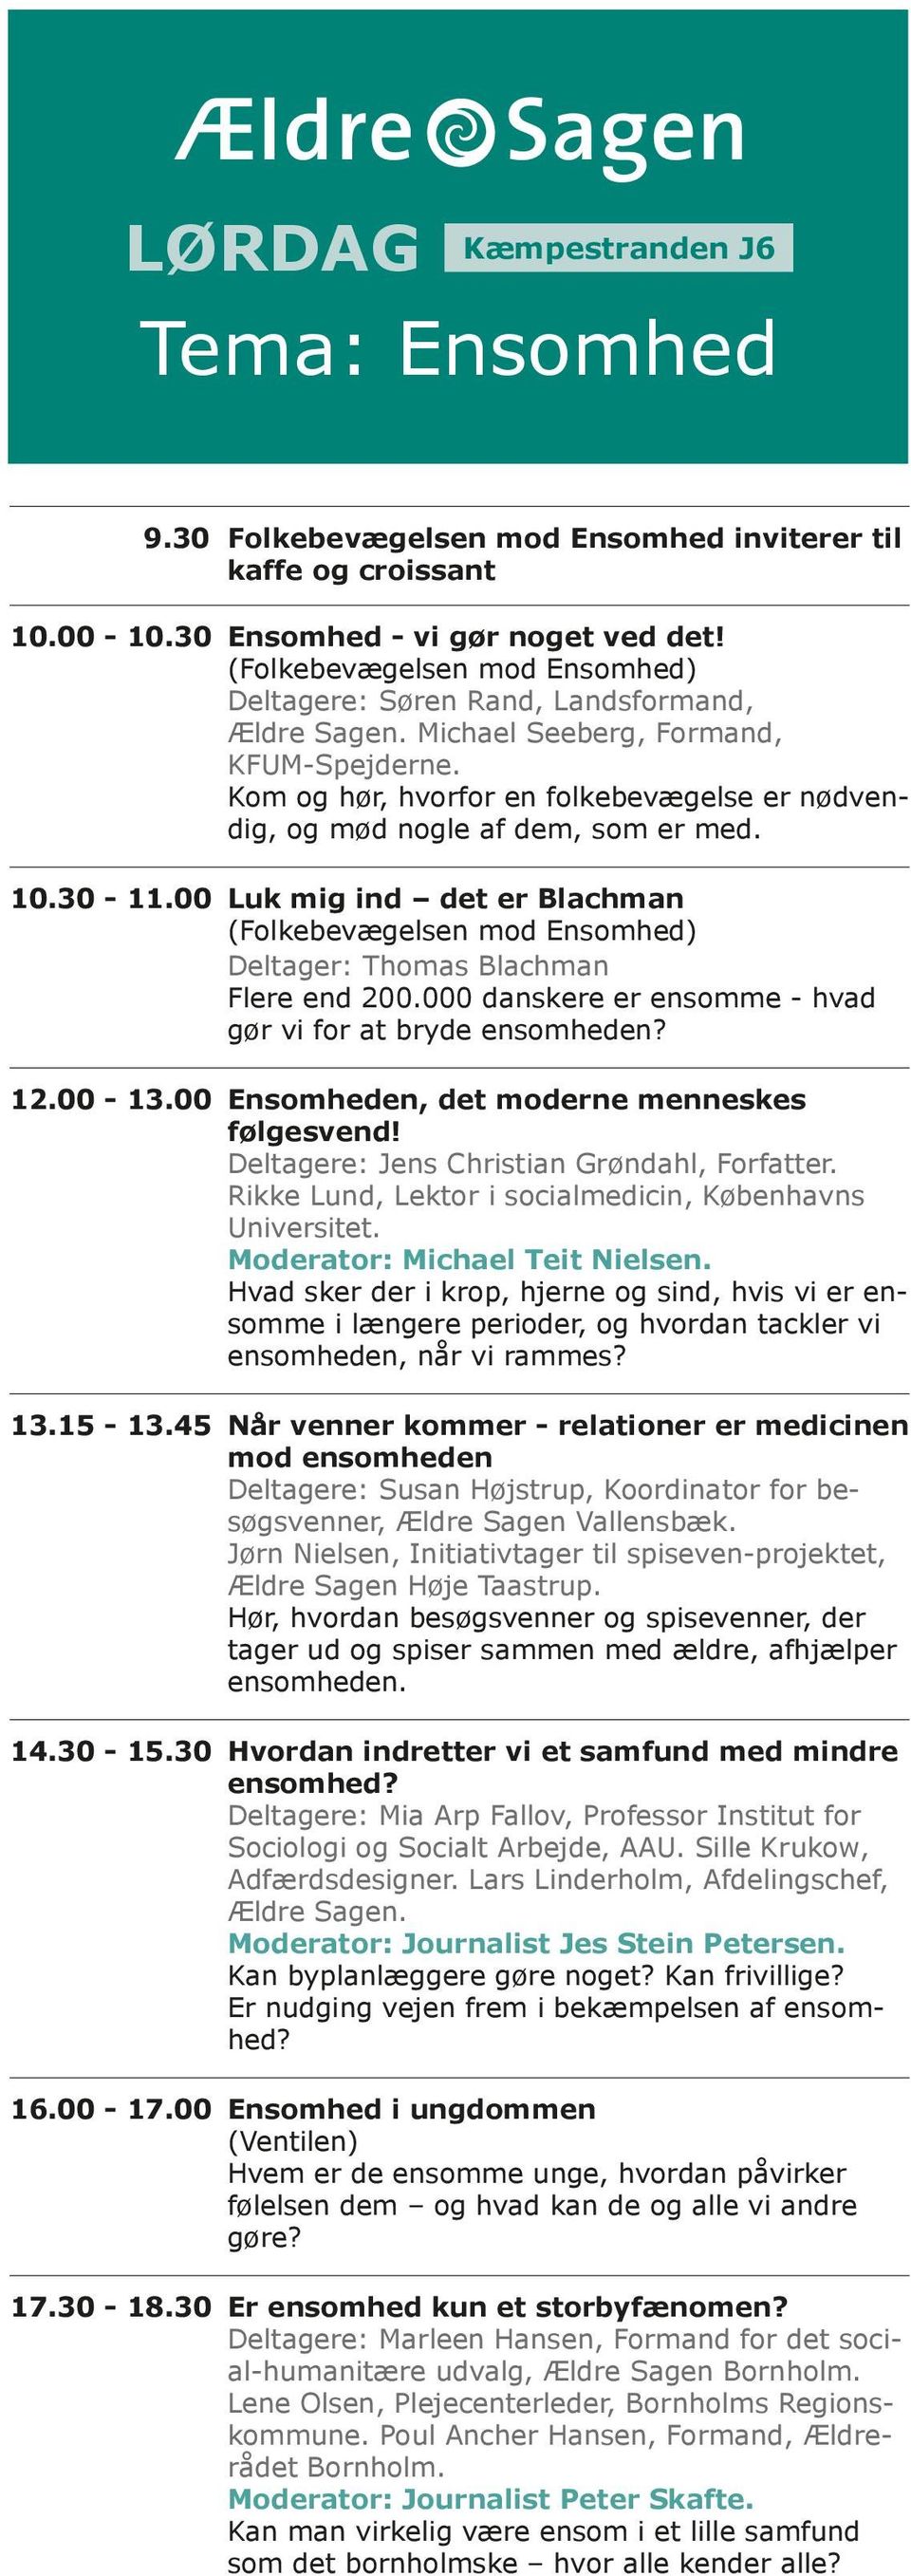 30-11.00 Luk mig ind det er Blachman (Folkebevægelsen mod Ensomhed) Deltager: Thomas Blachman Flere end 200.000 danskere er ensomme - hvad gør vi for at bryde ensomheden? 12.00-13.